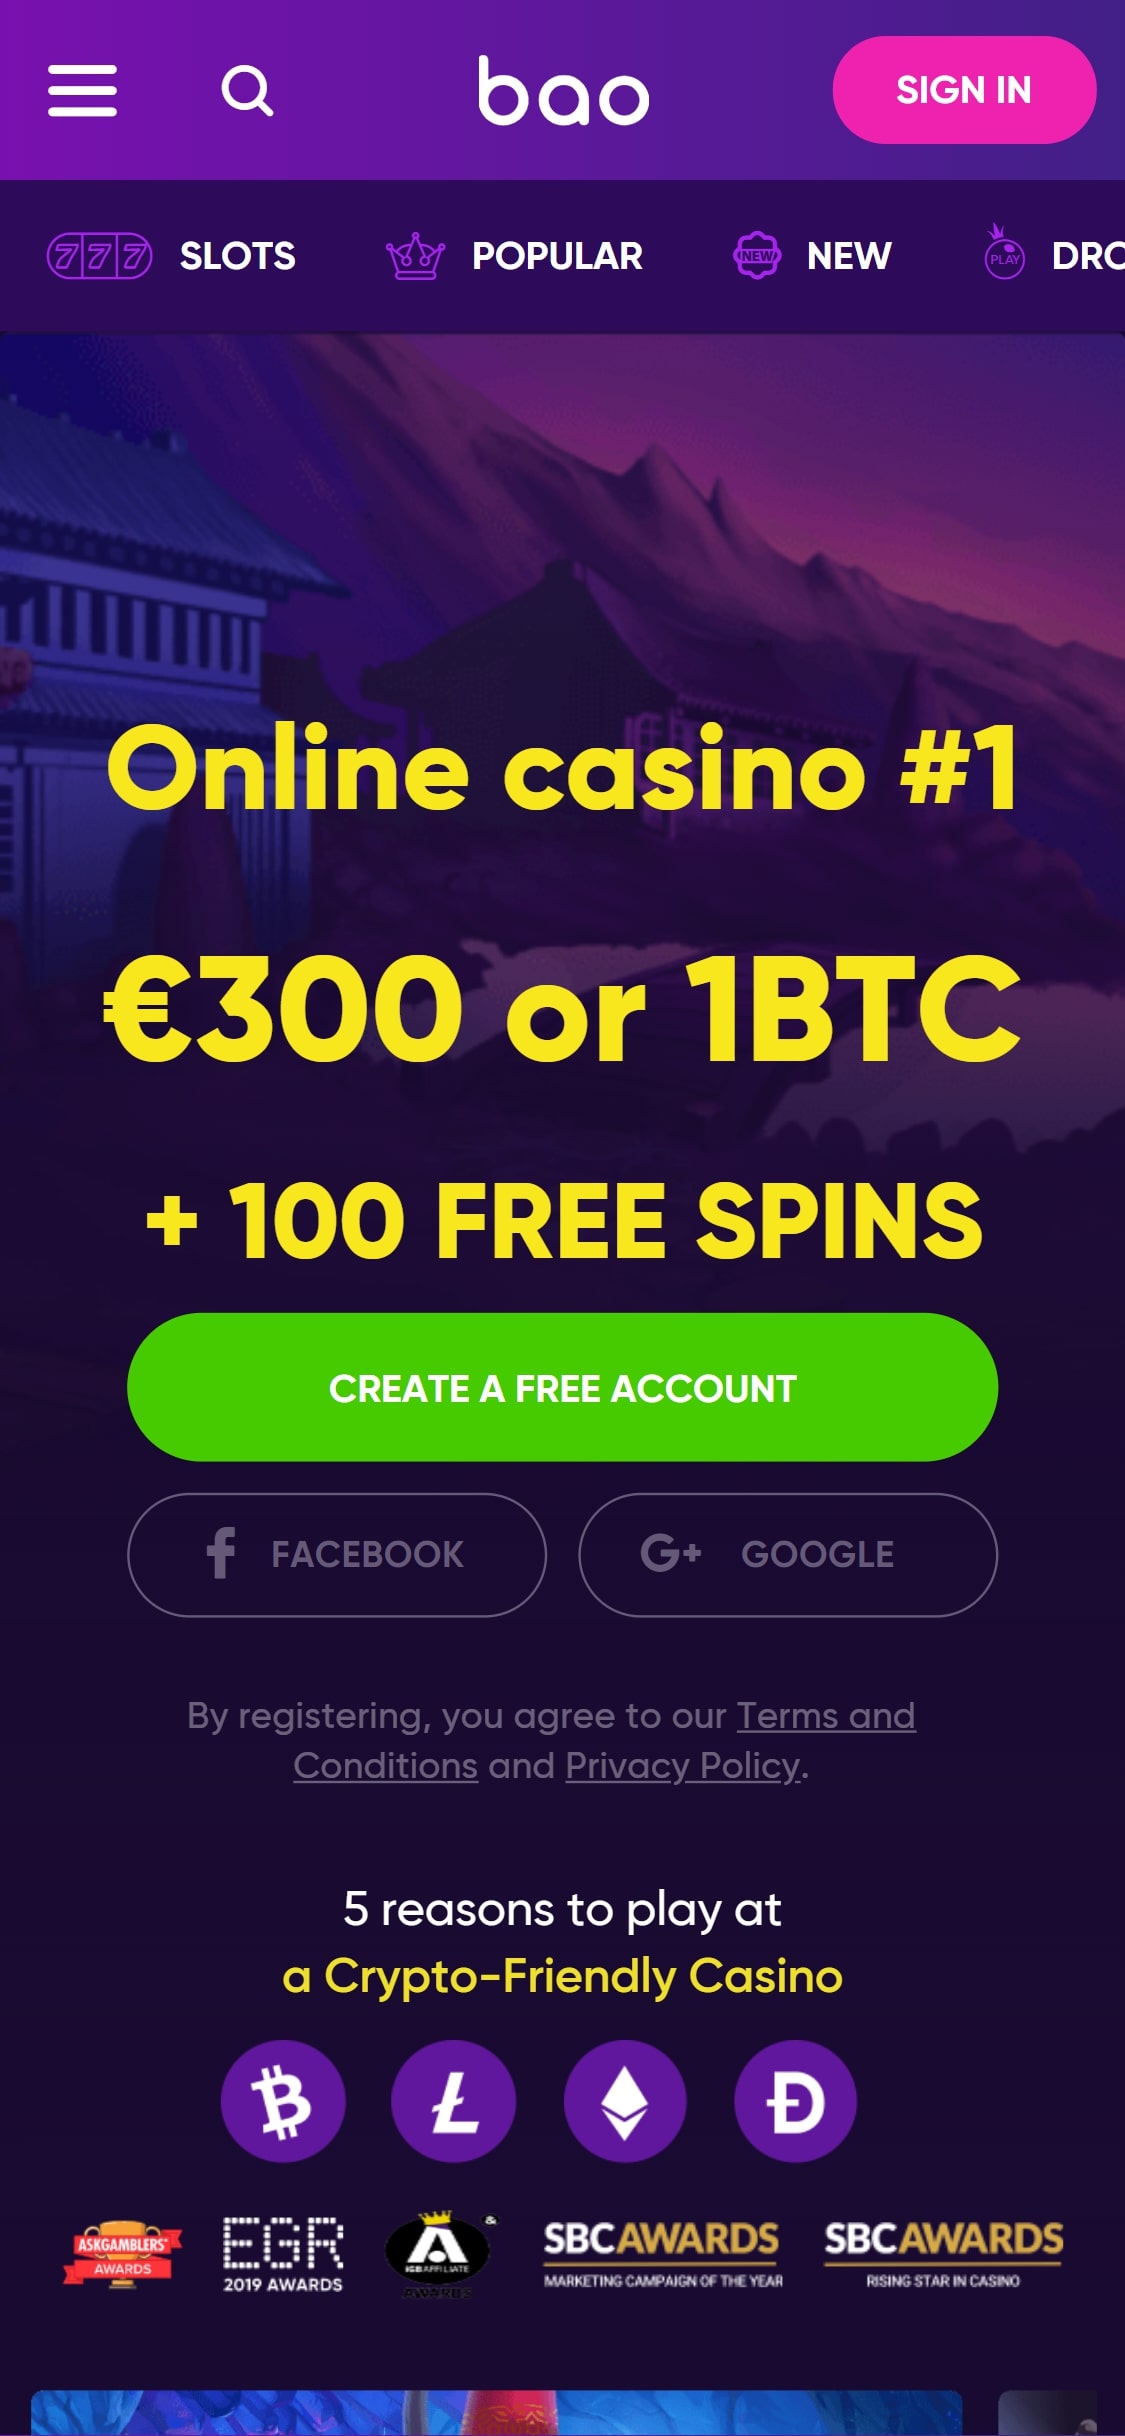 BAO Casino Mobile Review